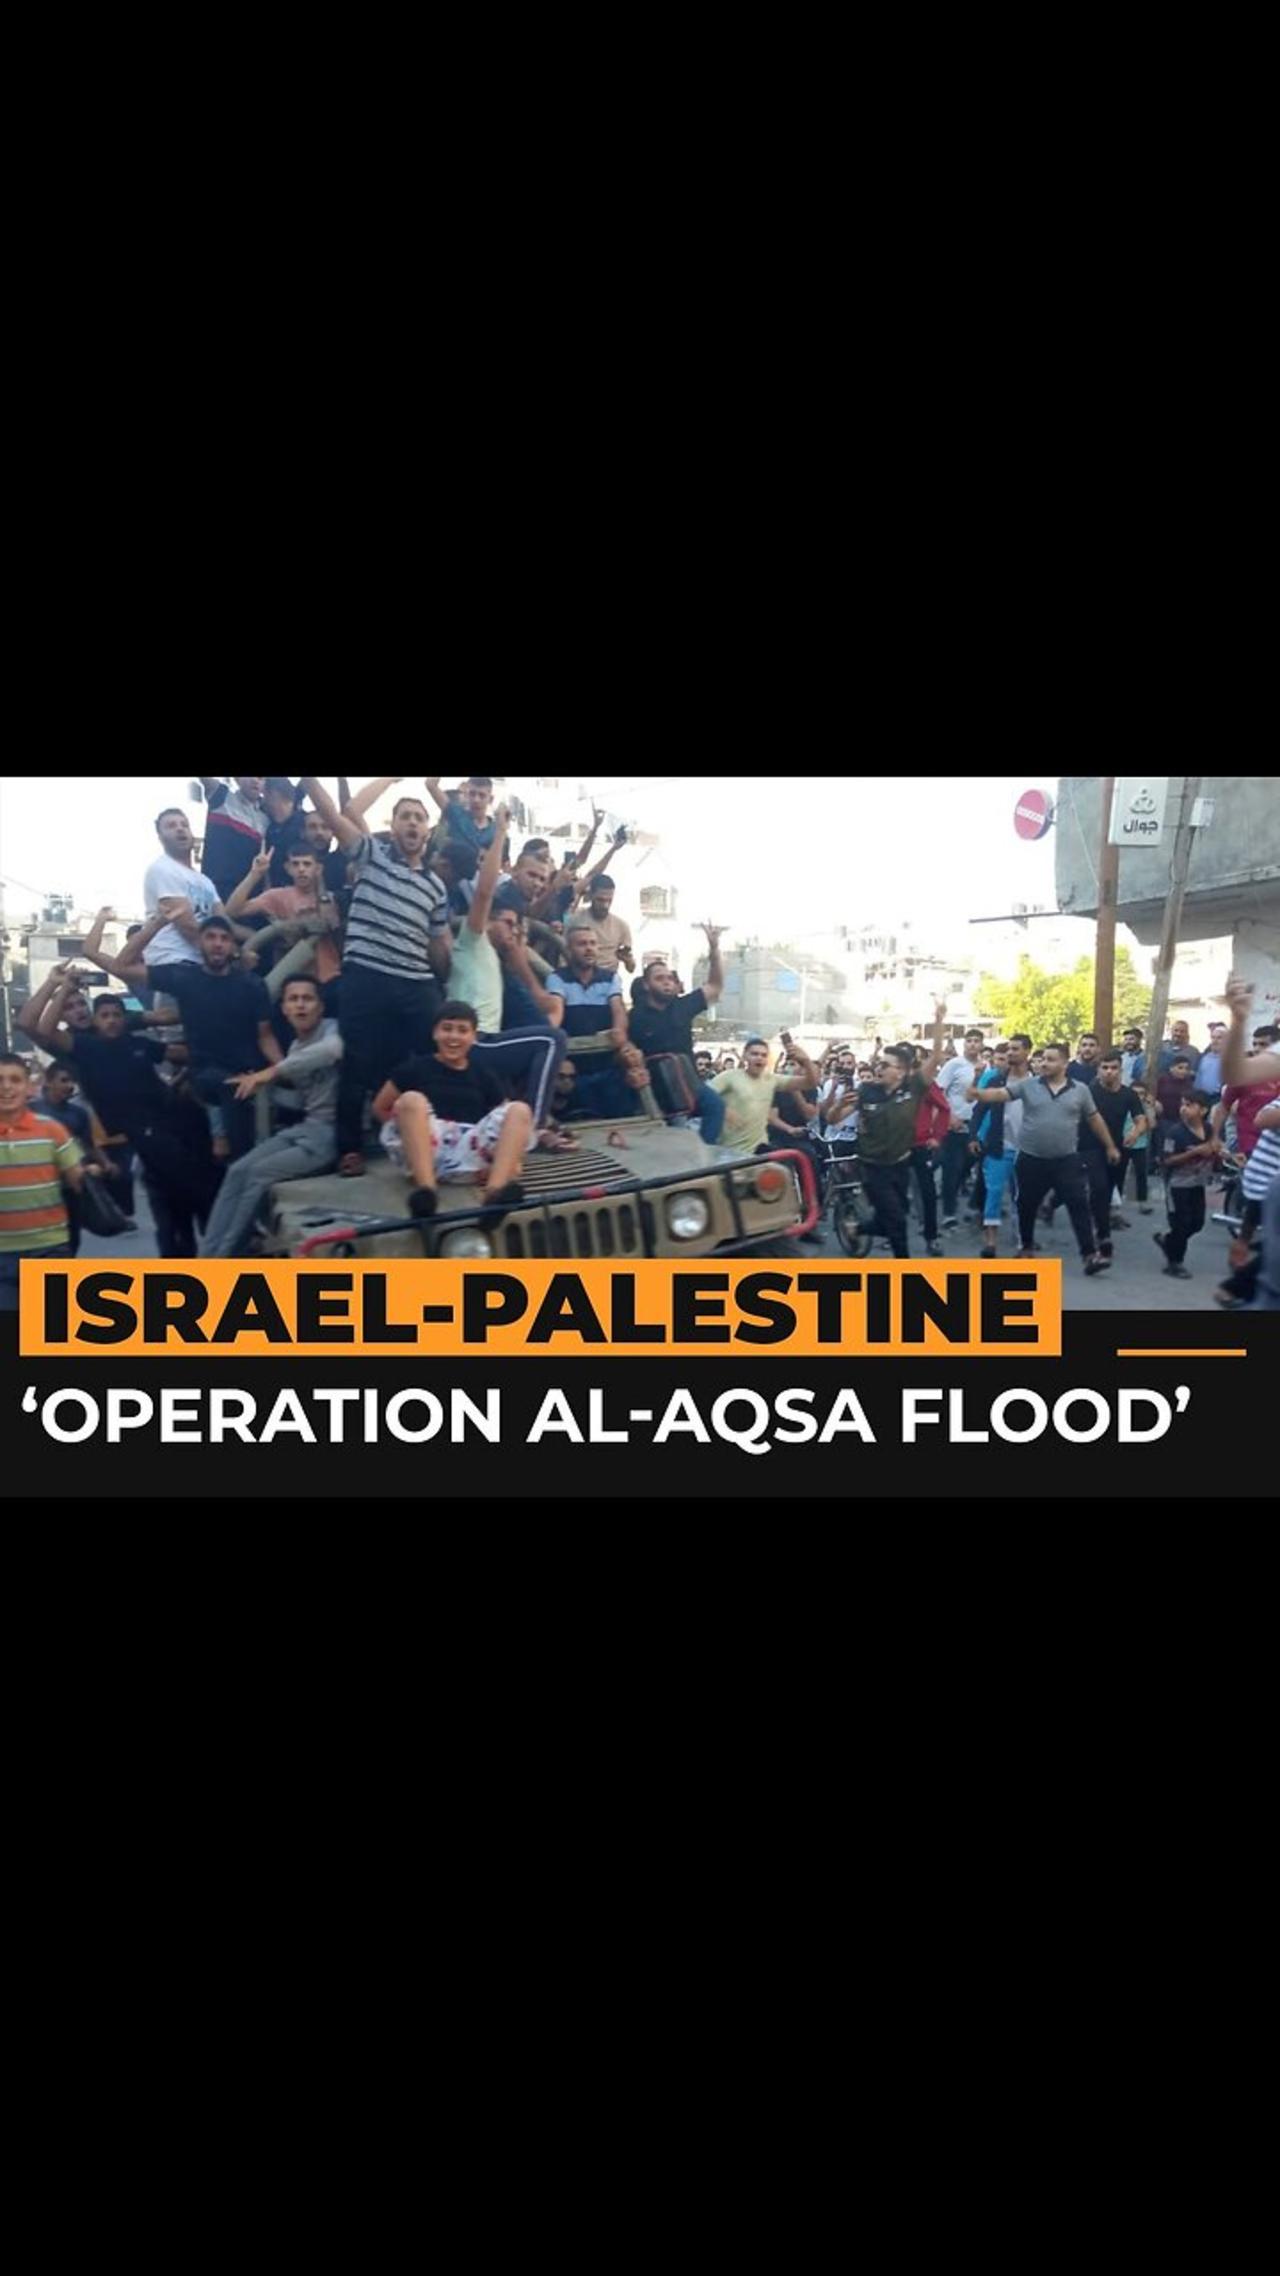 Israel ‘at war’ with Hamas as ‘Operation Al-Aqsa Flood’ under way _ Al Jazeera Newsfeed